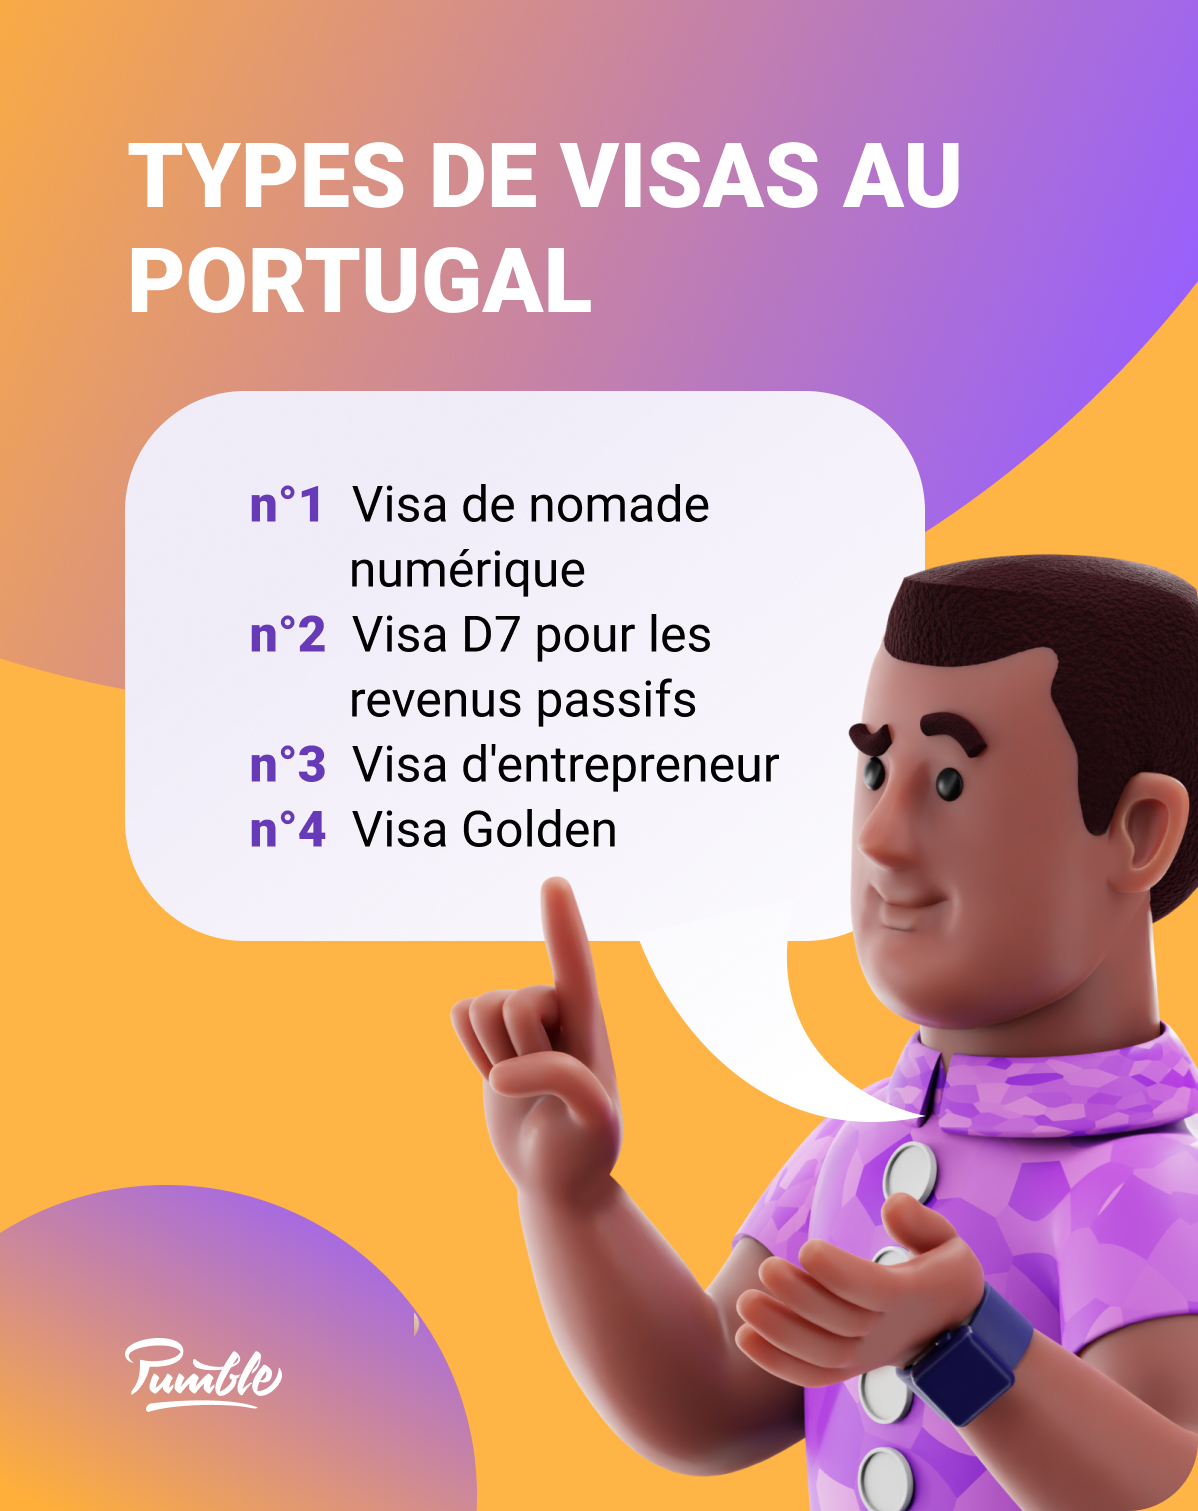 Il existe 4 types de visas différents que les nomades numériques peuvent demander au Portugal